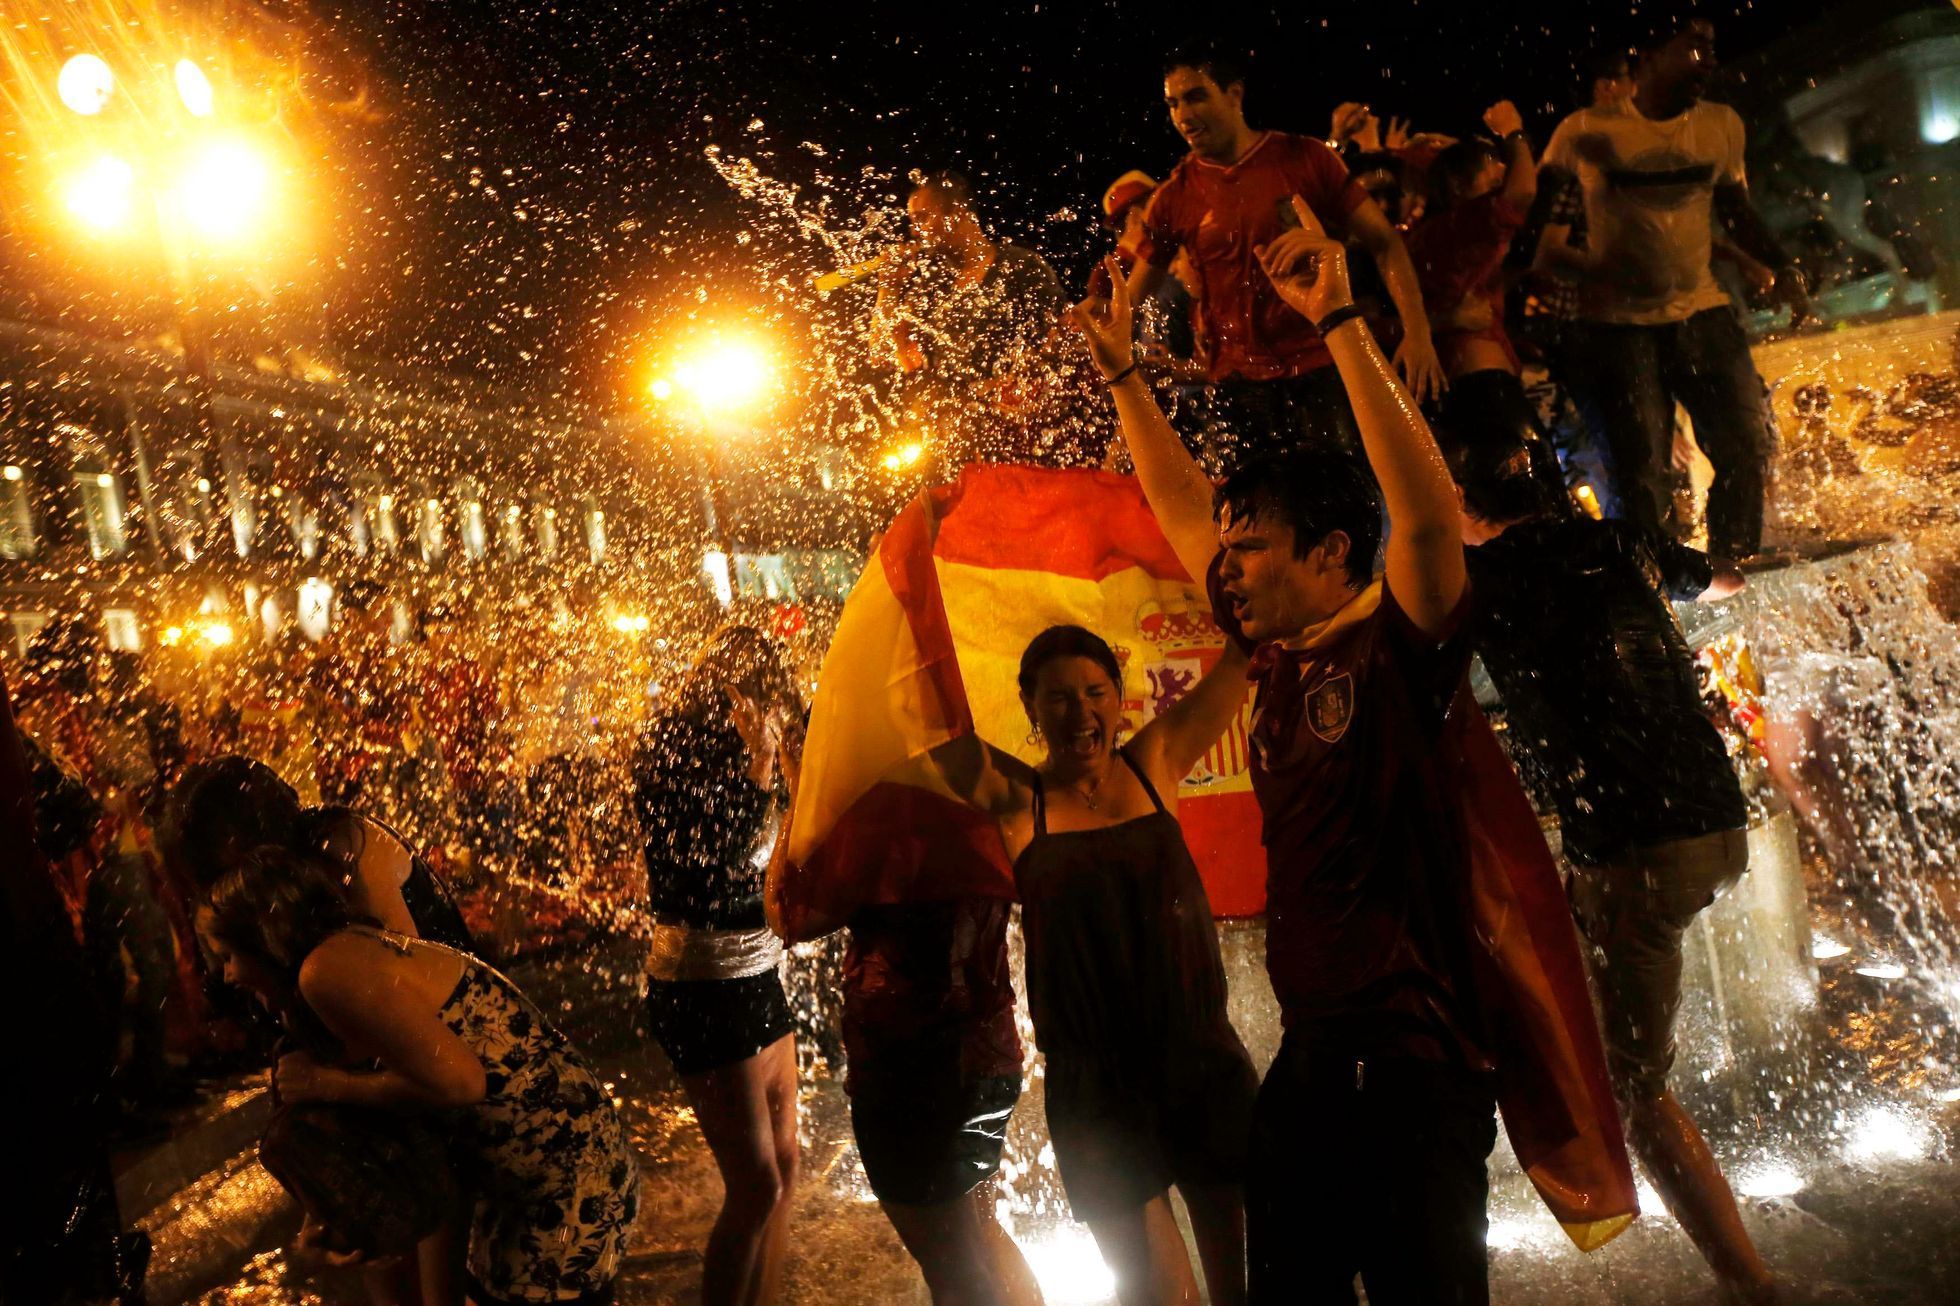 Fanoušci Španělska slaví titul na Euru 2012